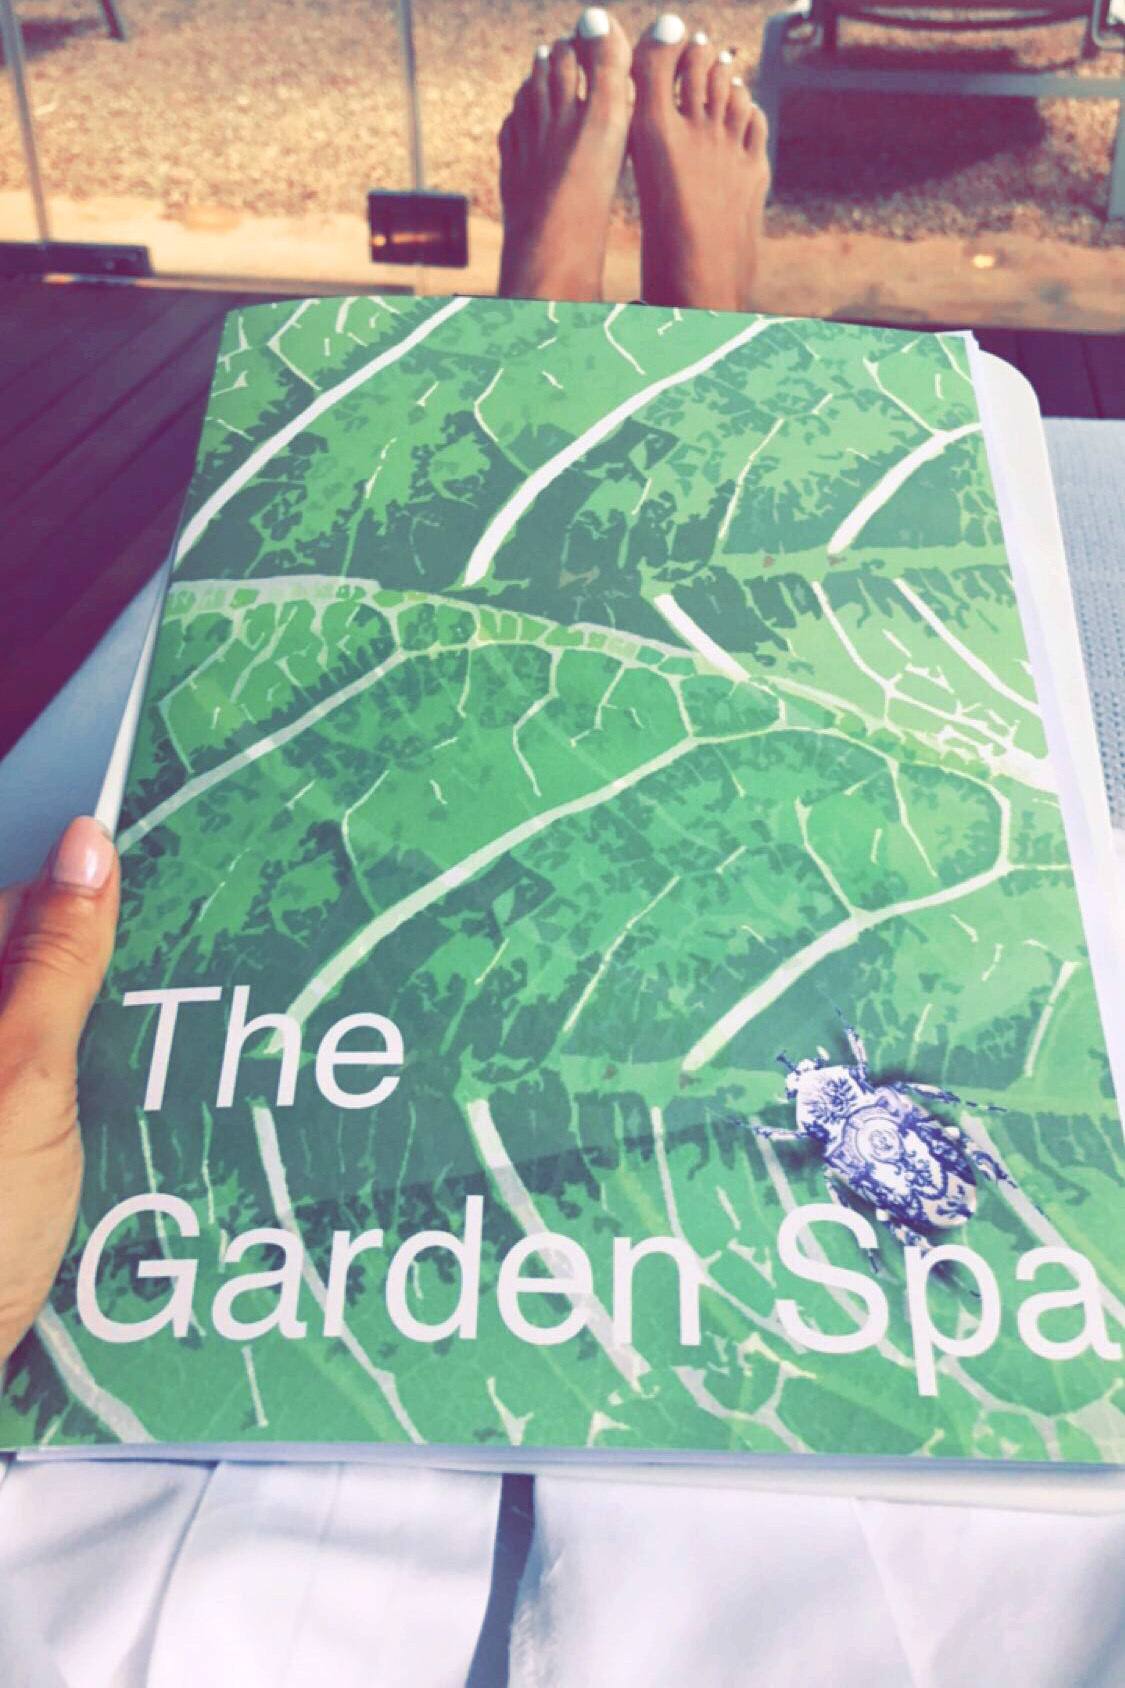 The Garden Spa